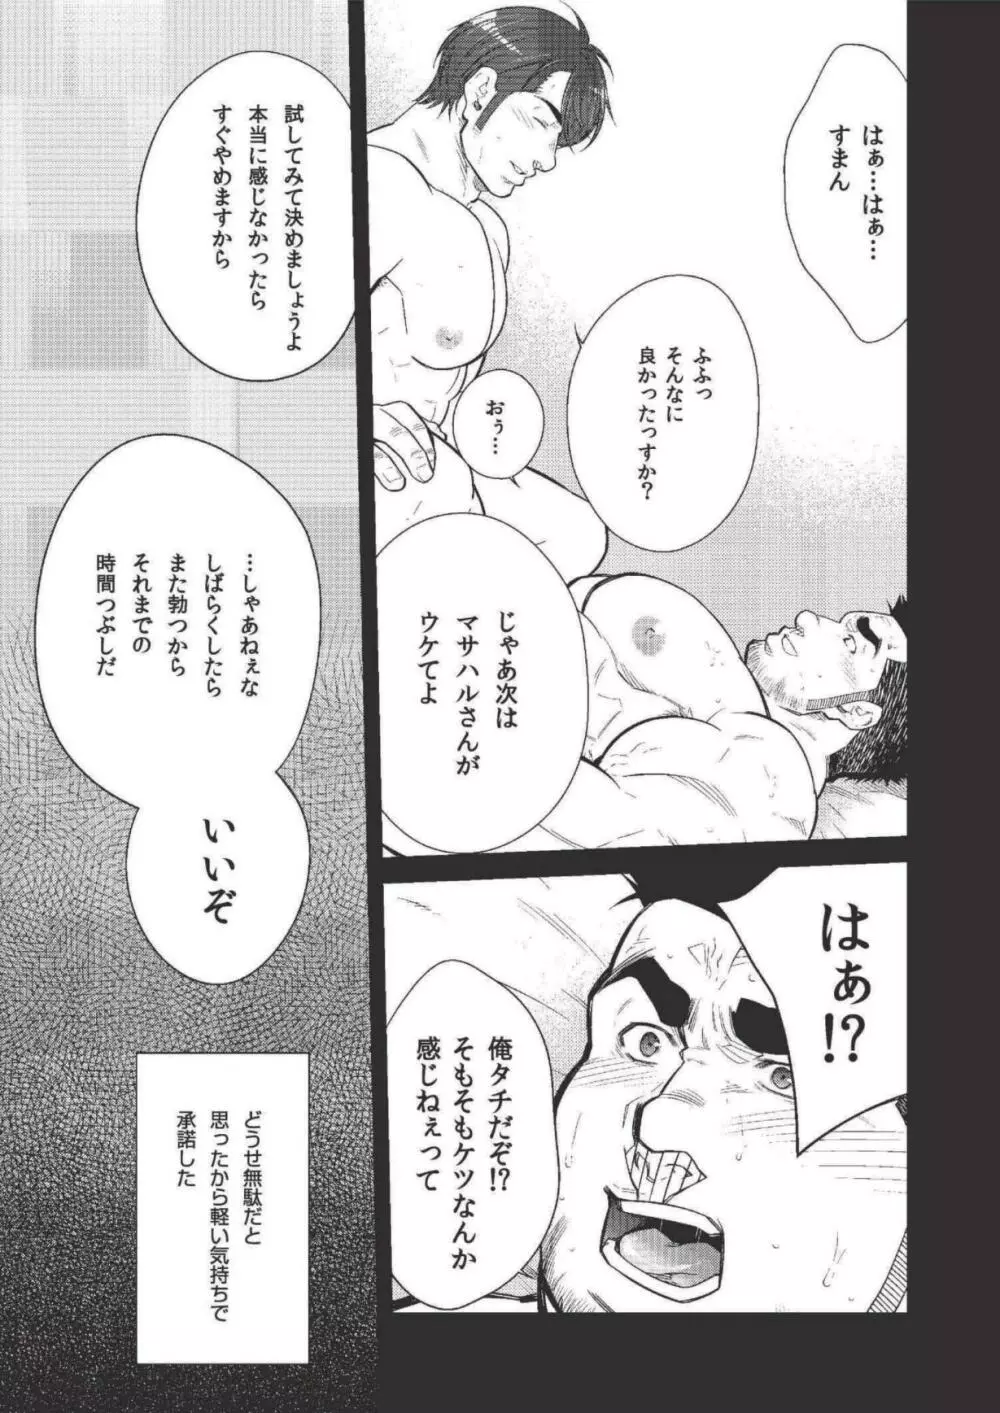 Terujirou - 晃次郎 - Badi Bʌ́di (バディ) 118 (Dec 2015) Page.5